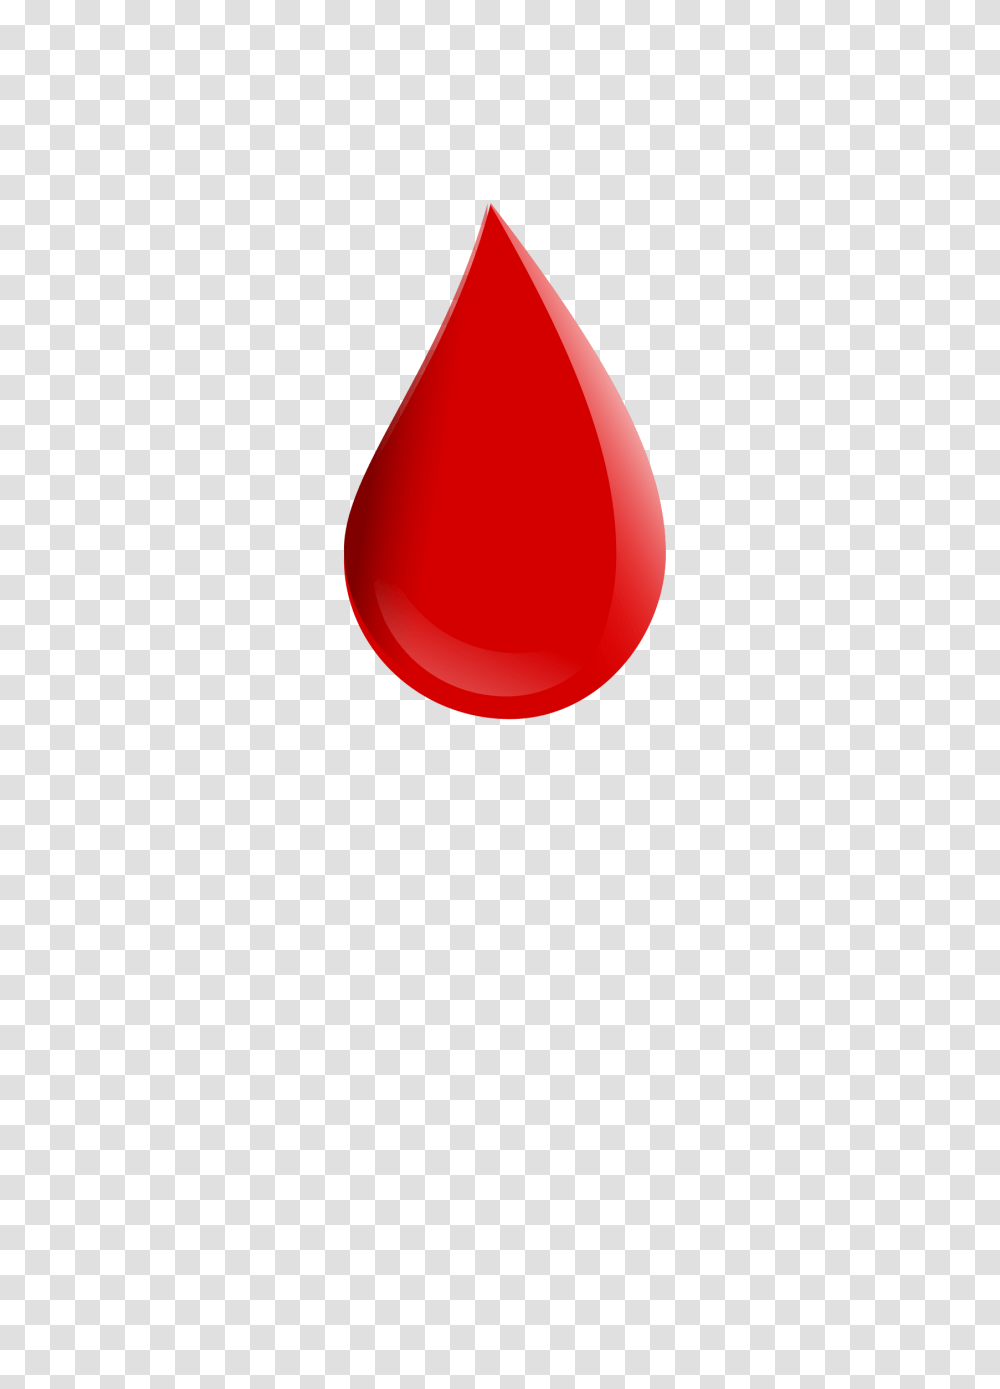 Blood Drop Clip Art Clipart Collection, Droplet Transparent Png